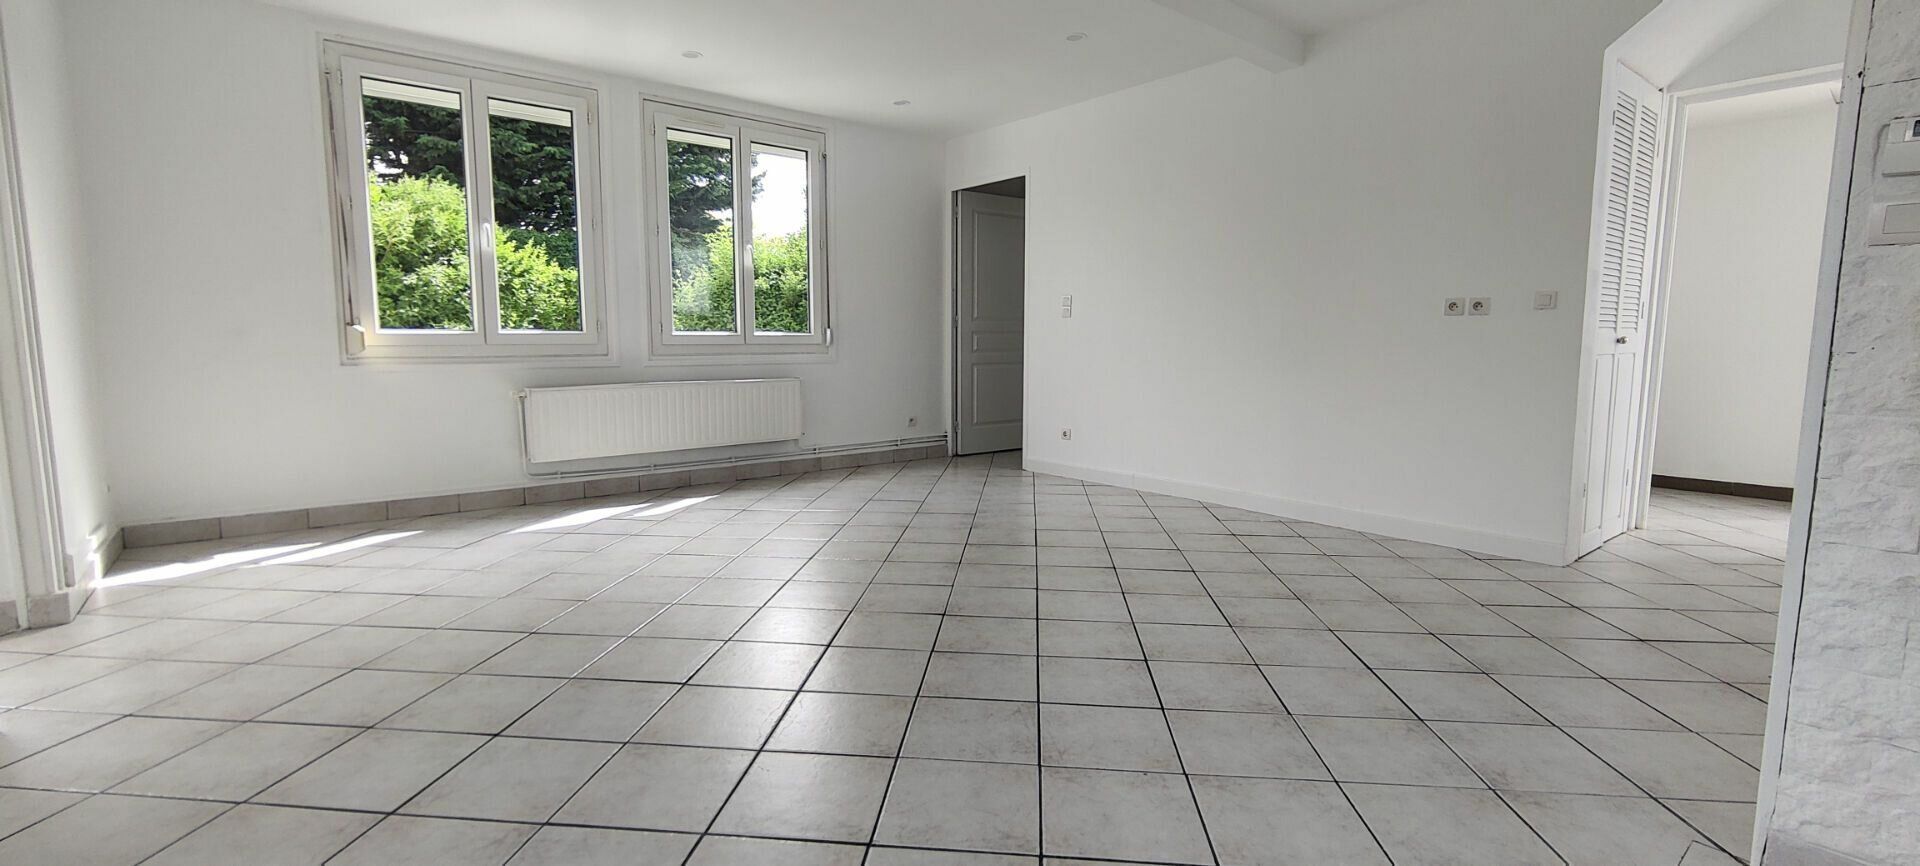 Maison à vendre 4 81.88m2 à Le Havre vignette-3